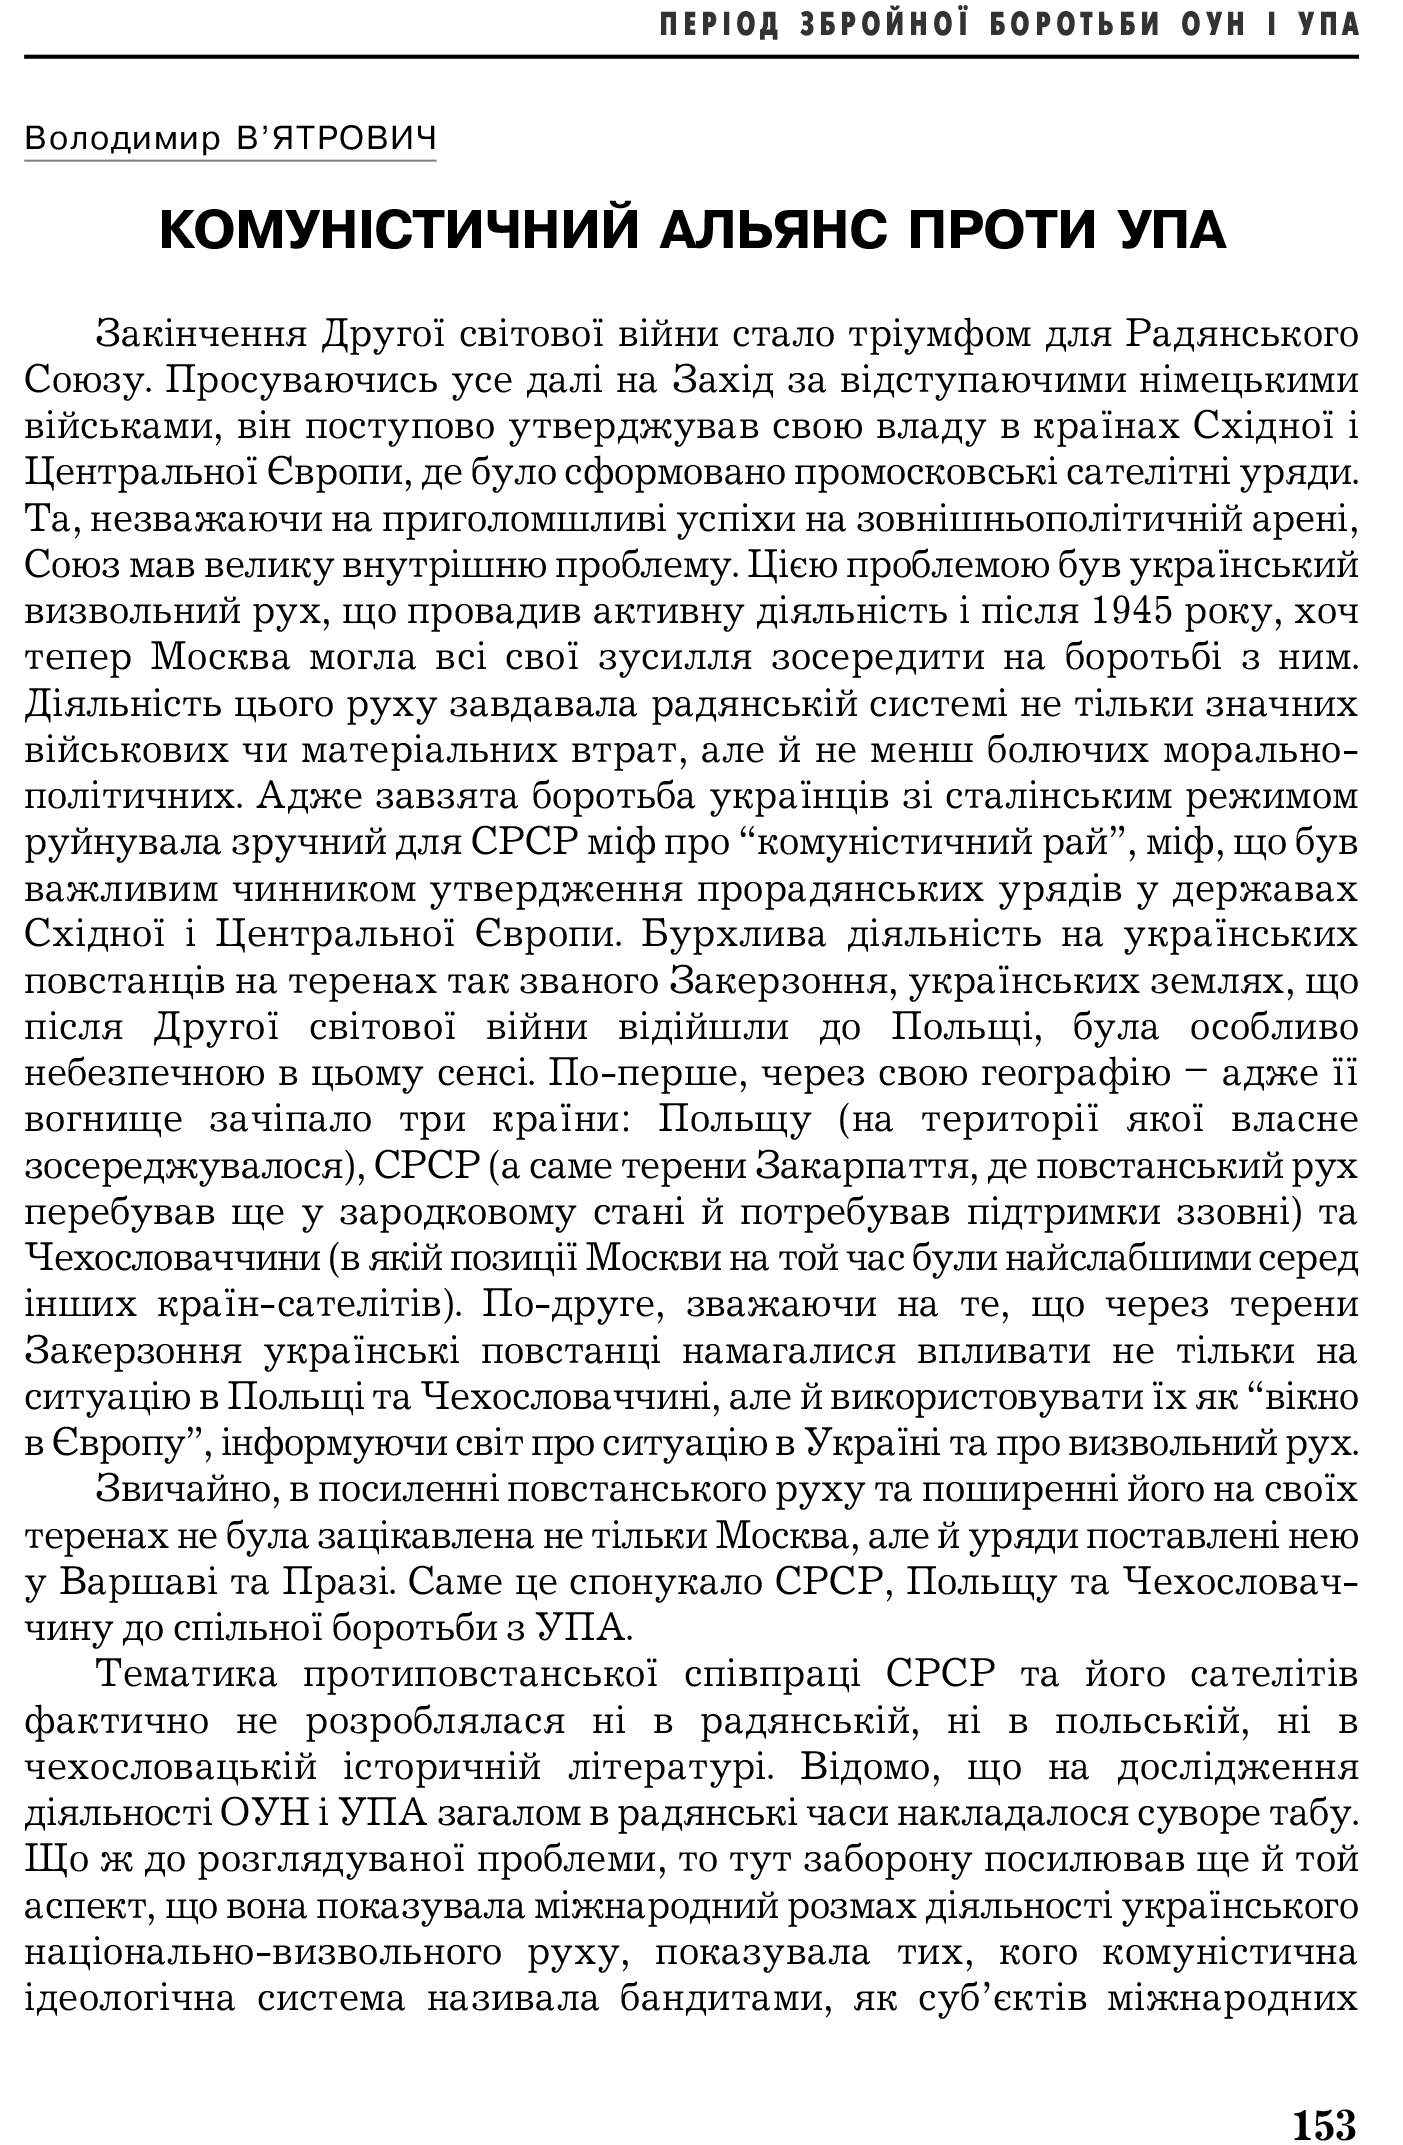 Український визвольний рух №5, ст. 153 - 166